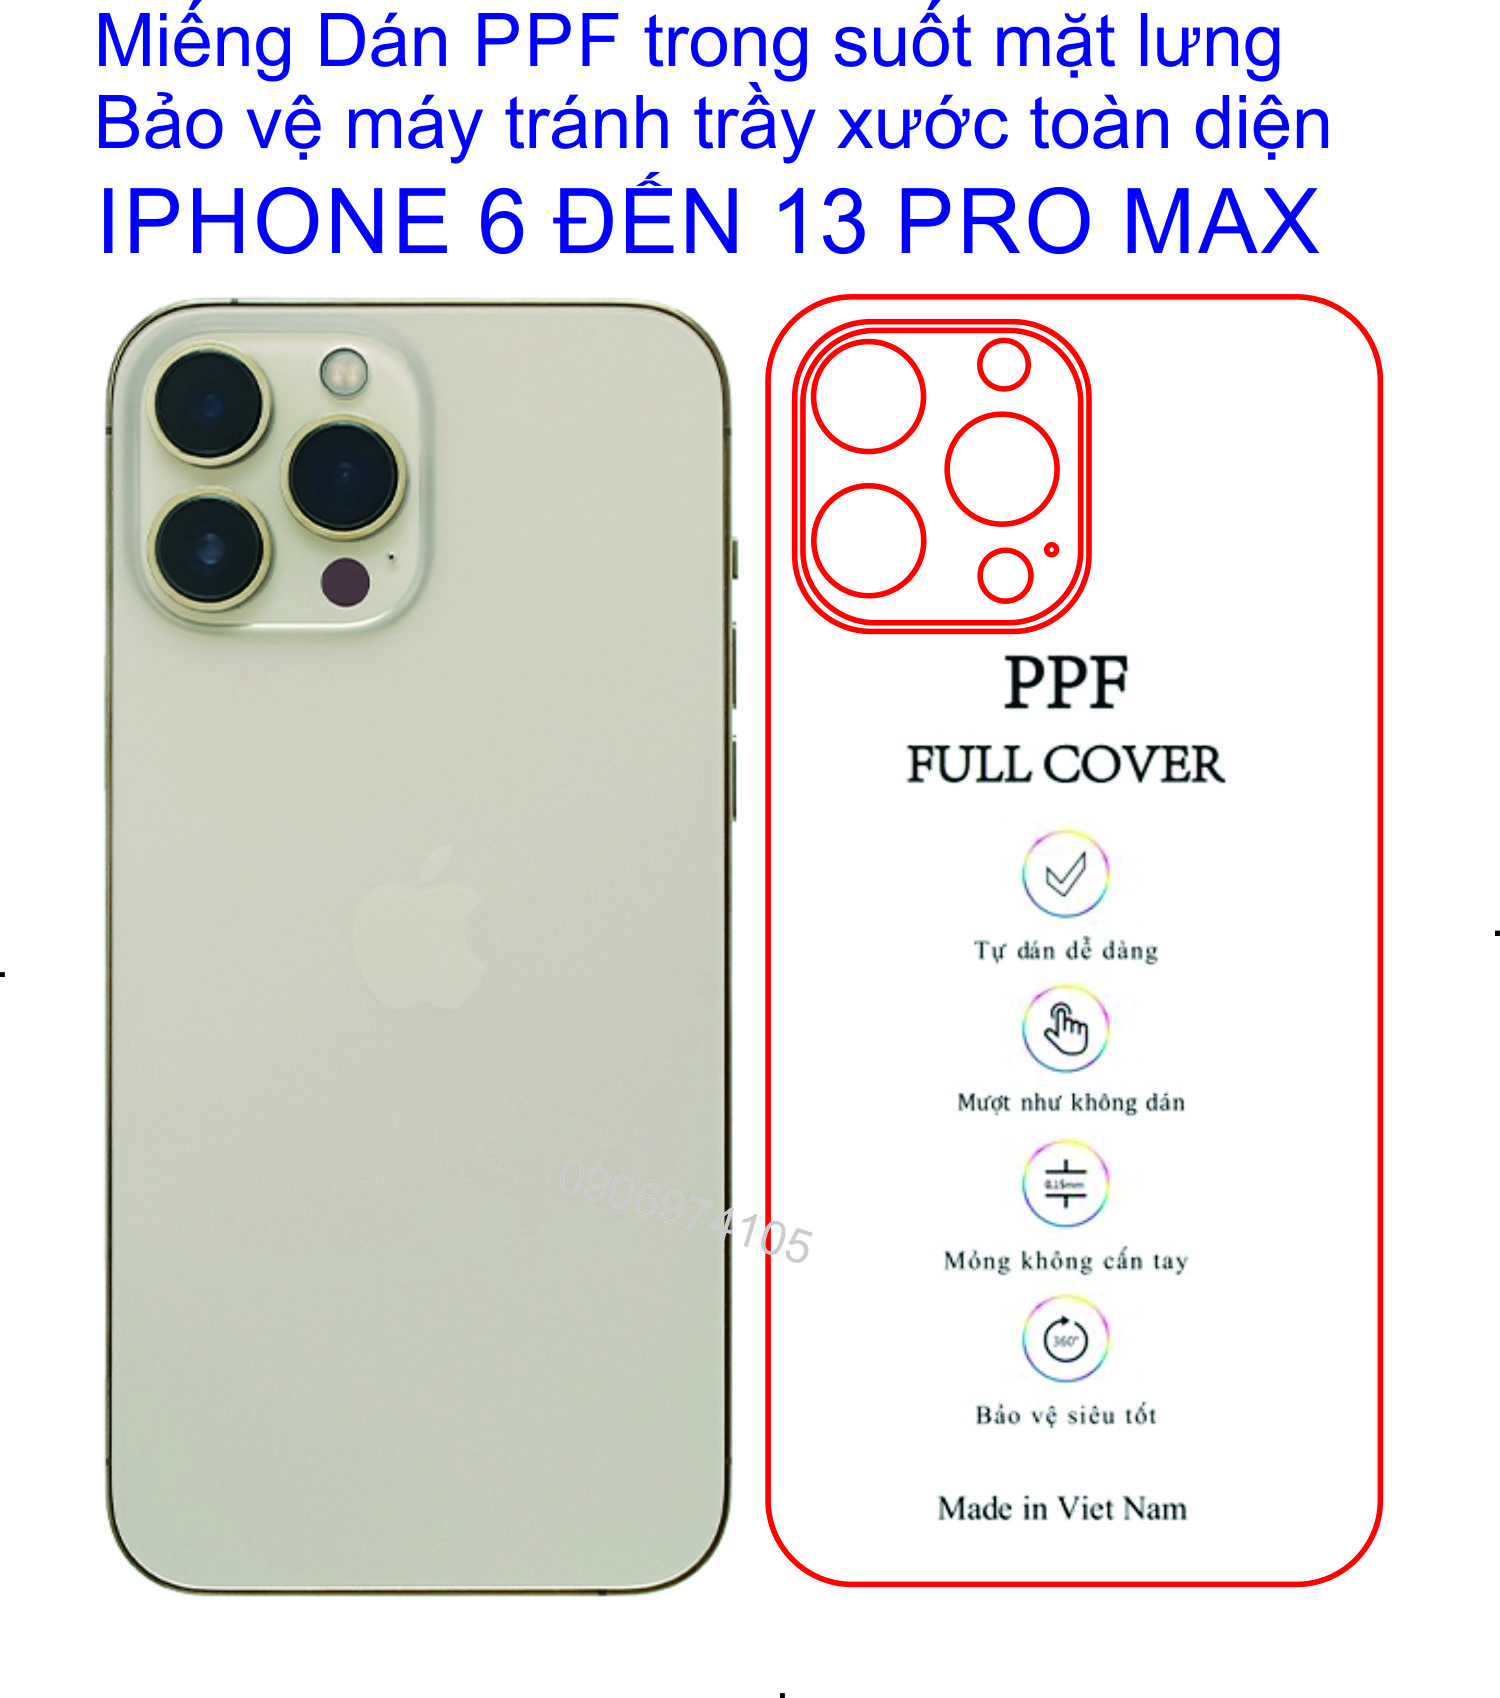 Miếng Dán PPF mặt lưng dành cho iphone 7plus đến 13 pro max bảo vệ máy tránh trầy xước toàn diện.....